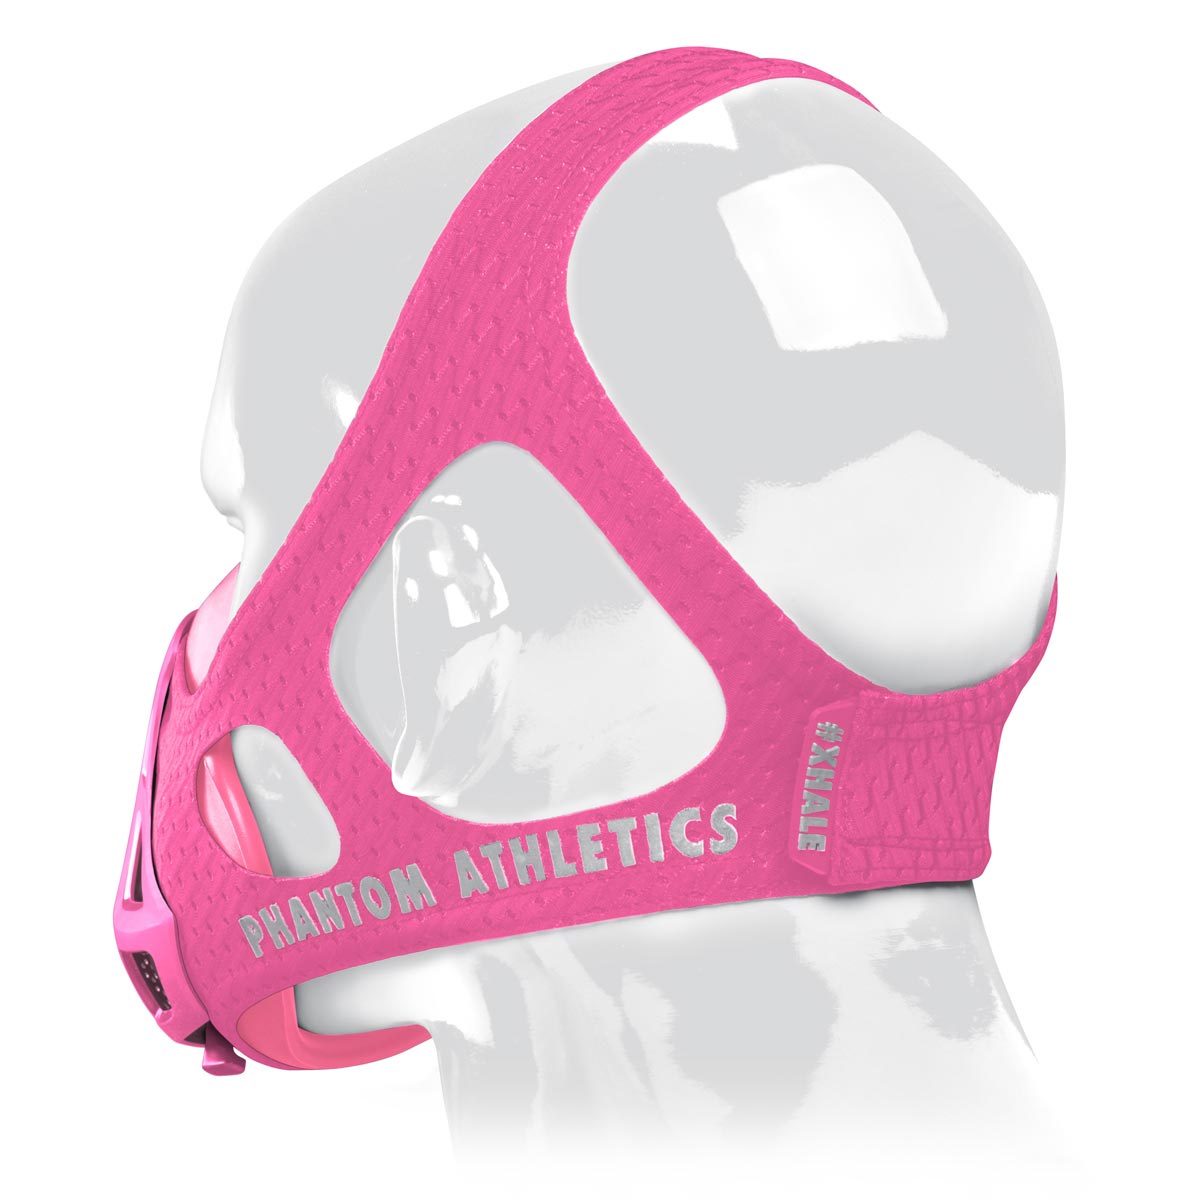 Die Phantom Trainingsmaske verfügt über ein patentiertes Kopfband um dir ein Maximum an Halt im Training zu geben. Jetzt auch in der Farbe Pink.